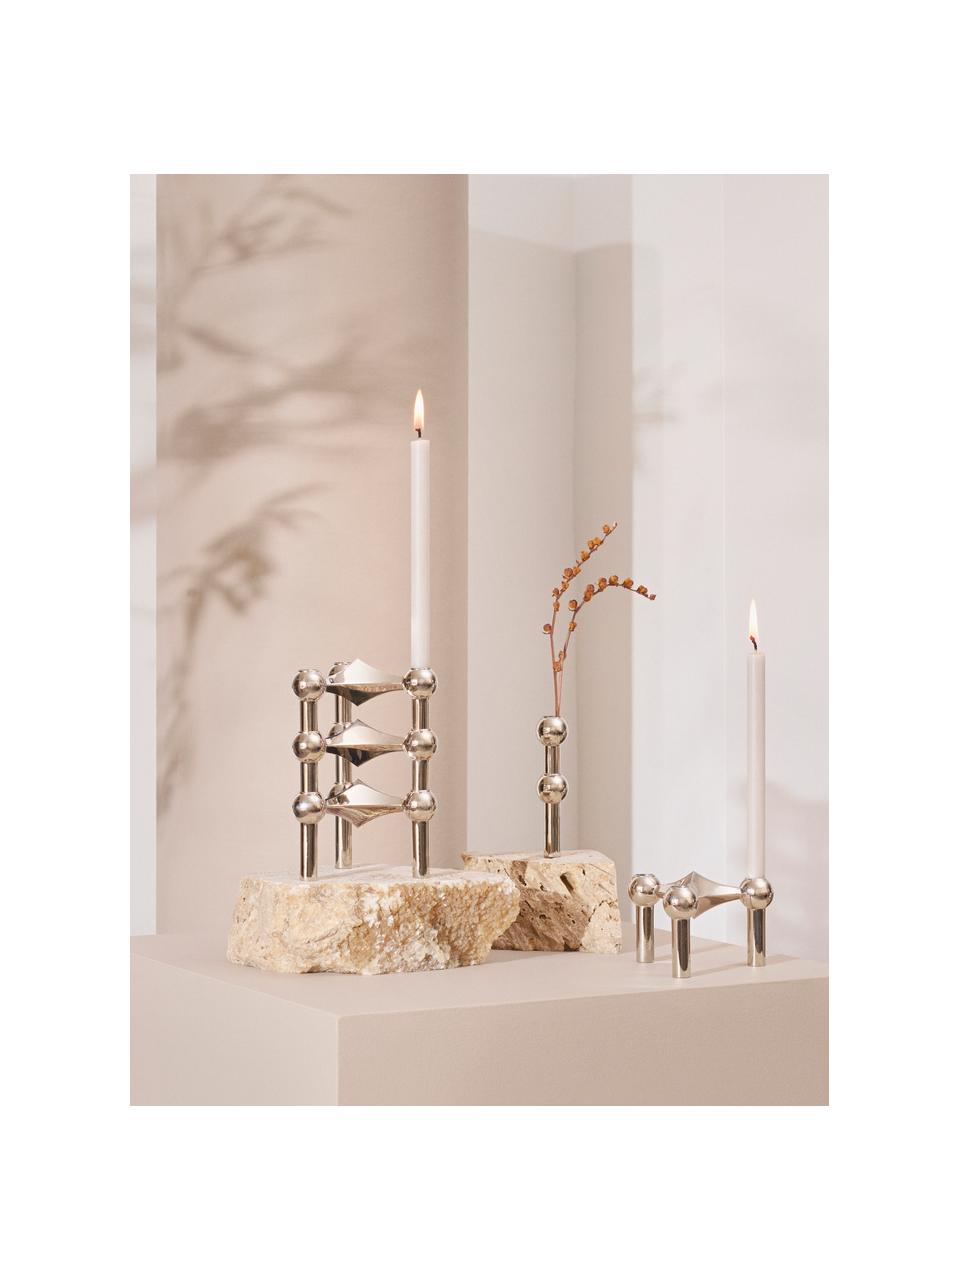 Tenké stolní svíčky Stoff Nagel, 12 ks, Parafínový vosk, Světle šedá, Ø 1 cm, V 18 cm